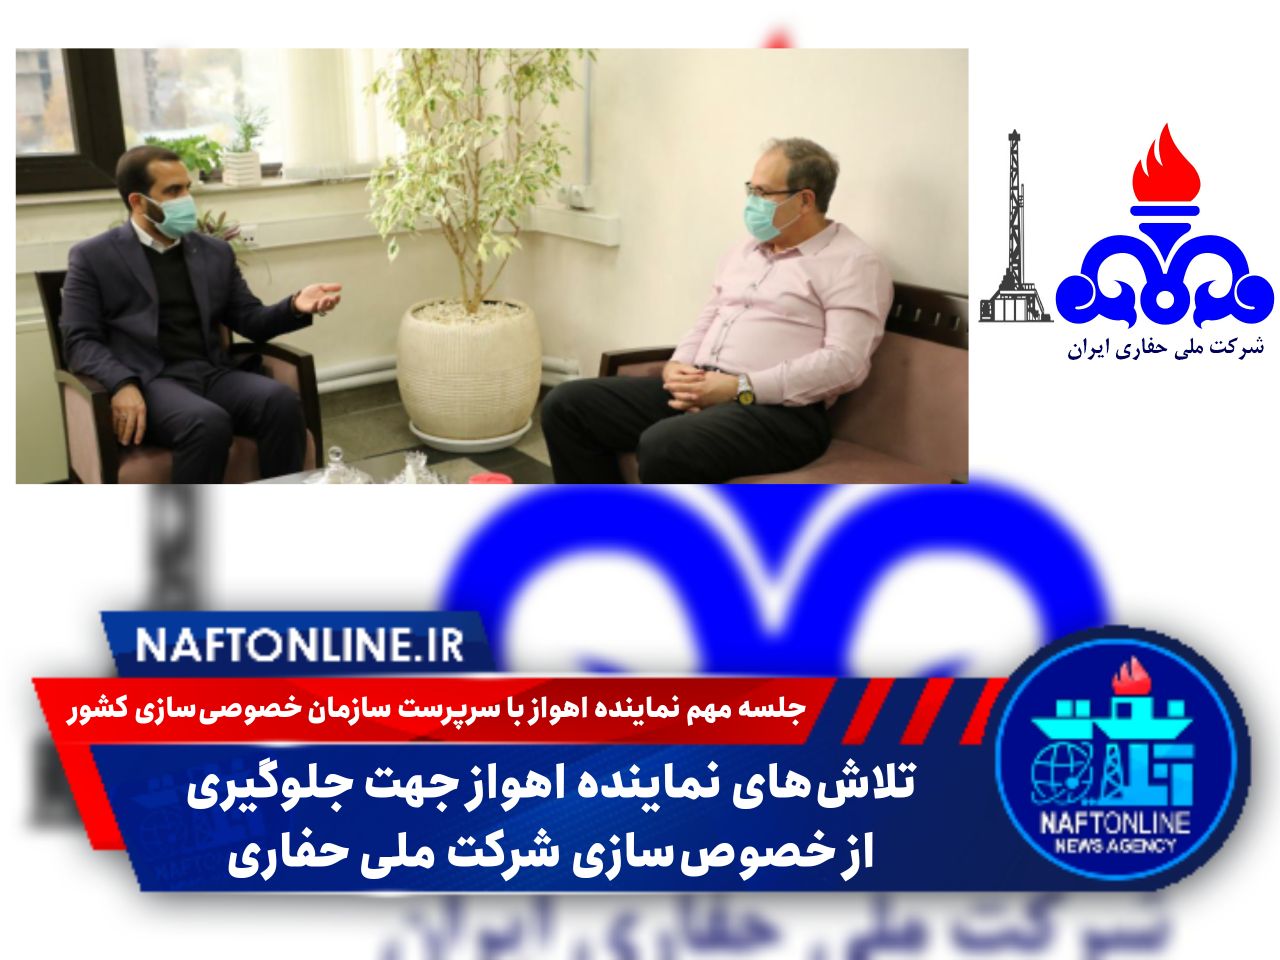 مهندس مجتبی یوسفی نماینده اهواز در مجلس شورای اسلامی| نفت آنلاین